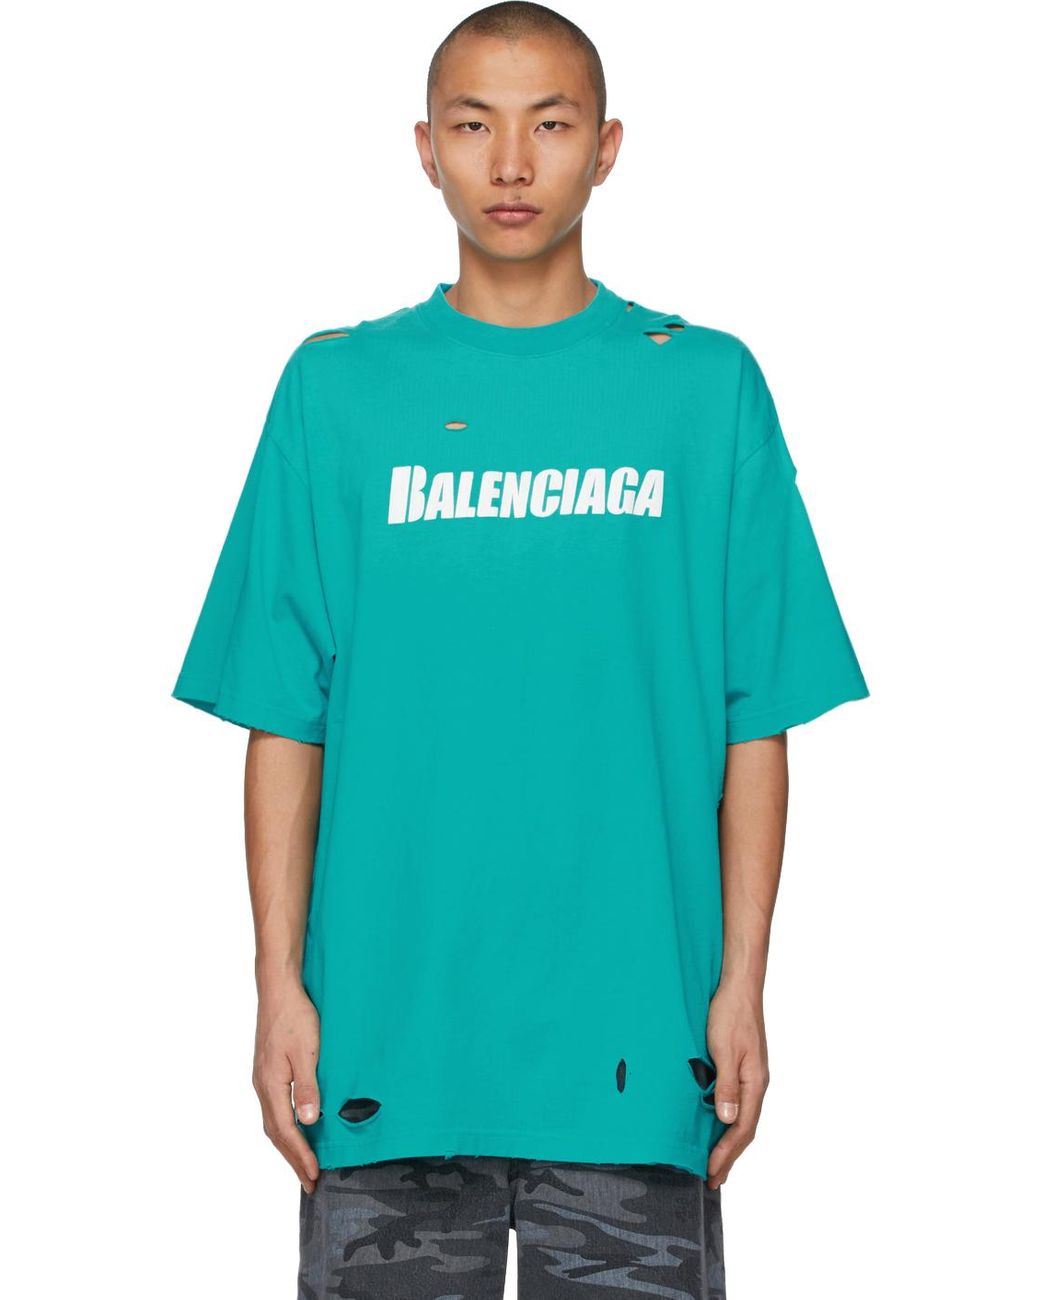 Balenciaga Logo Tshirt Blue Back logo  Chalk White Mens Fashion Tops   Sets Tshirts  Polo Shirts on Carousell